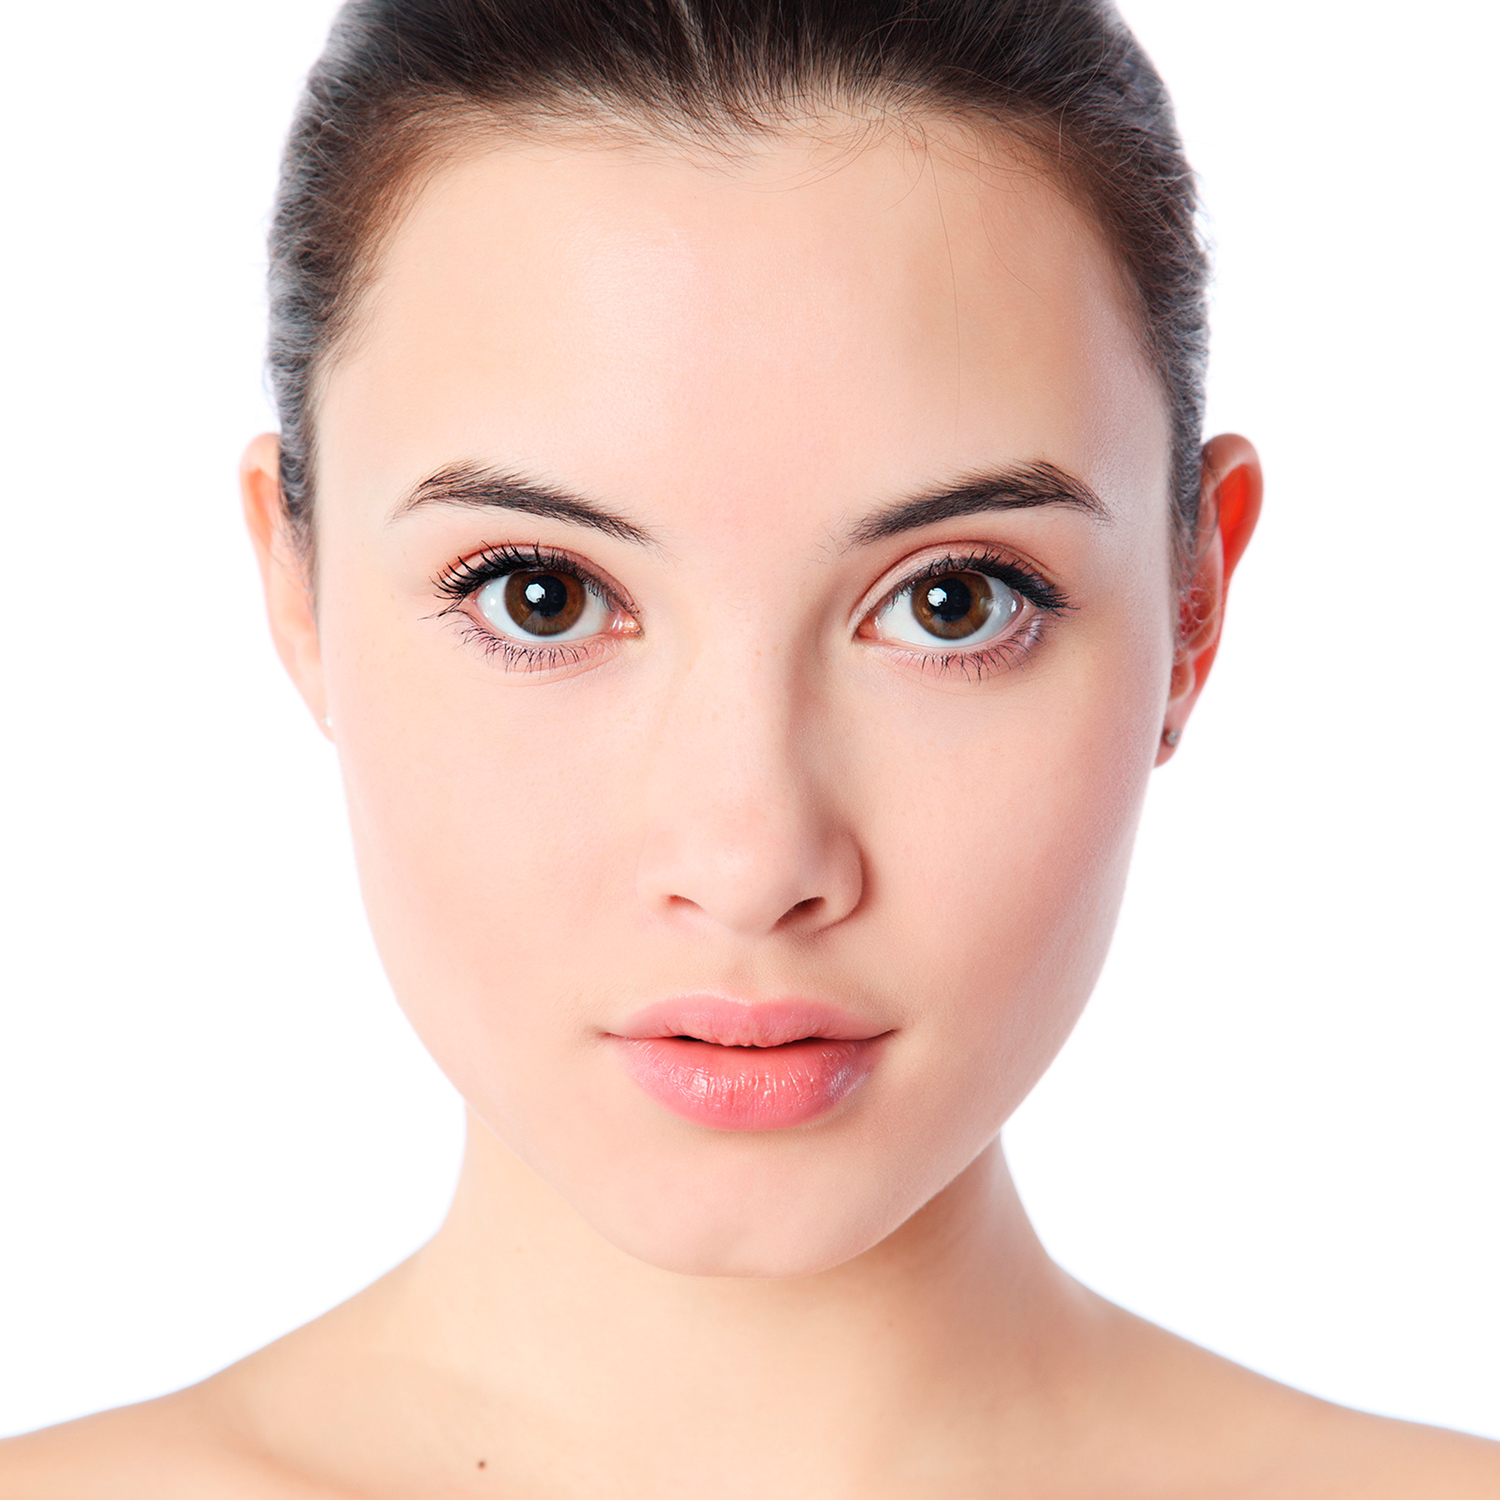 Facial hair labia acne period